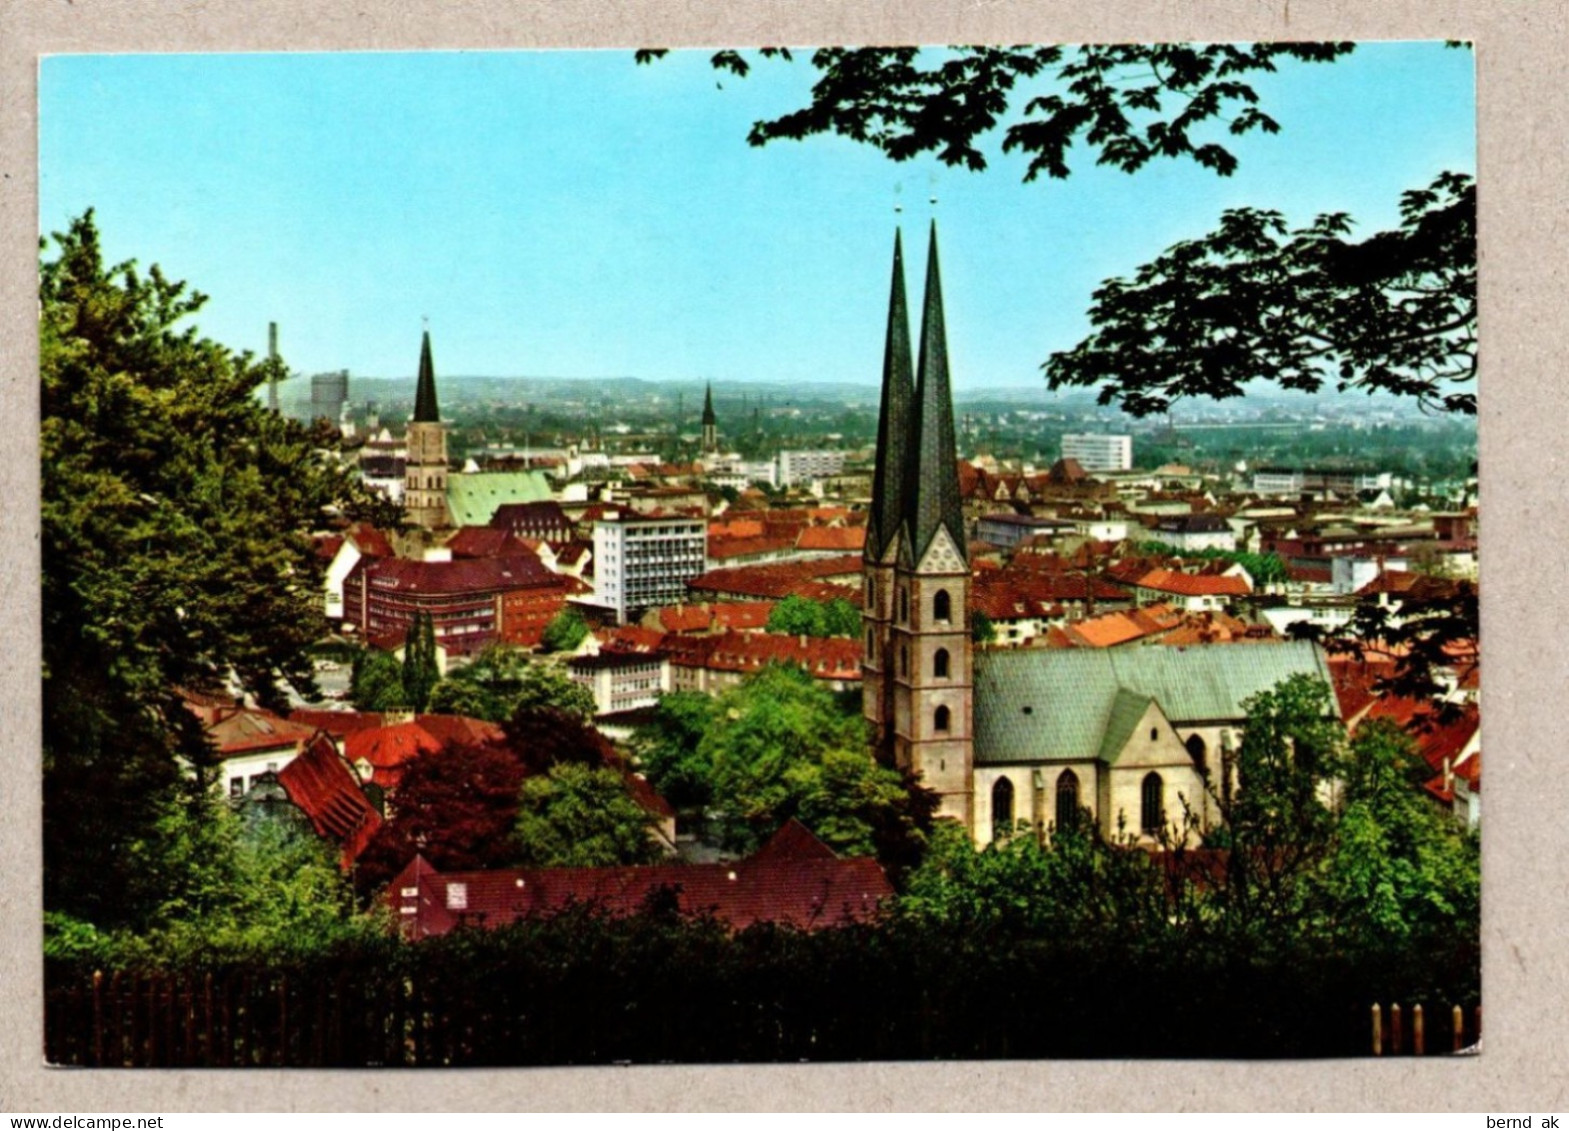 005# BRD - Color-AK :11 Karten gelaufen - Bielefeld (alle im Bild)